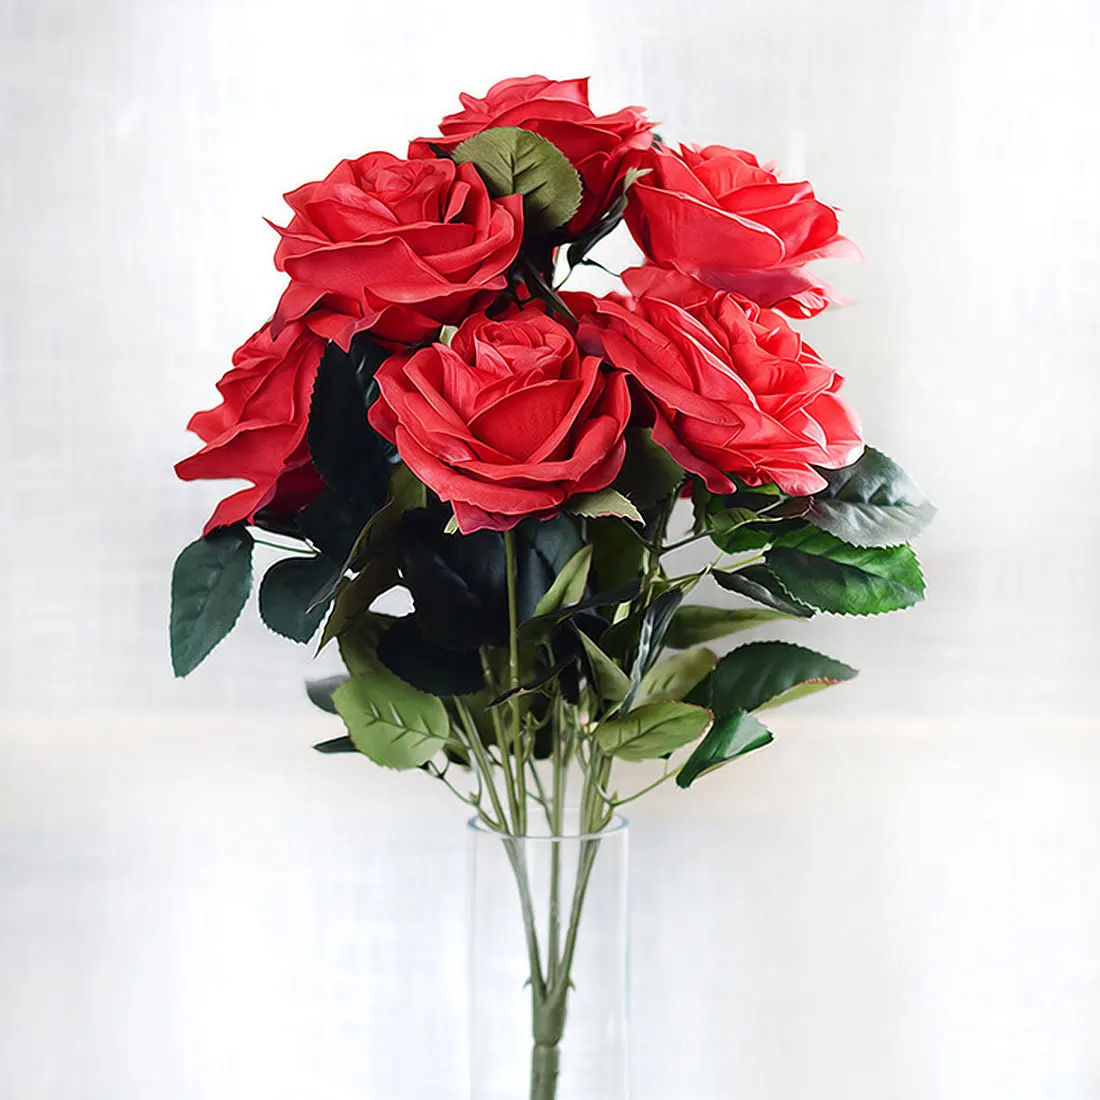 Украшение для дома, 10 голов, французские романтические искусственные розы, свадебные шёлковые цветы для украшения, вечерние, подарок на день Святого Валентина